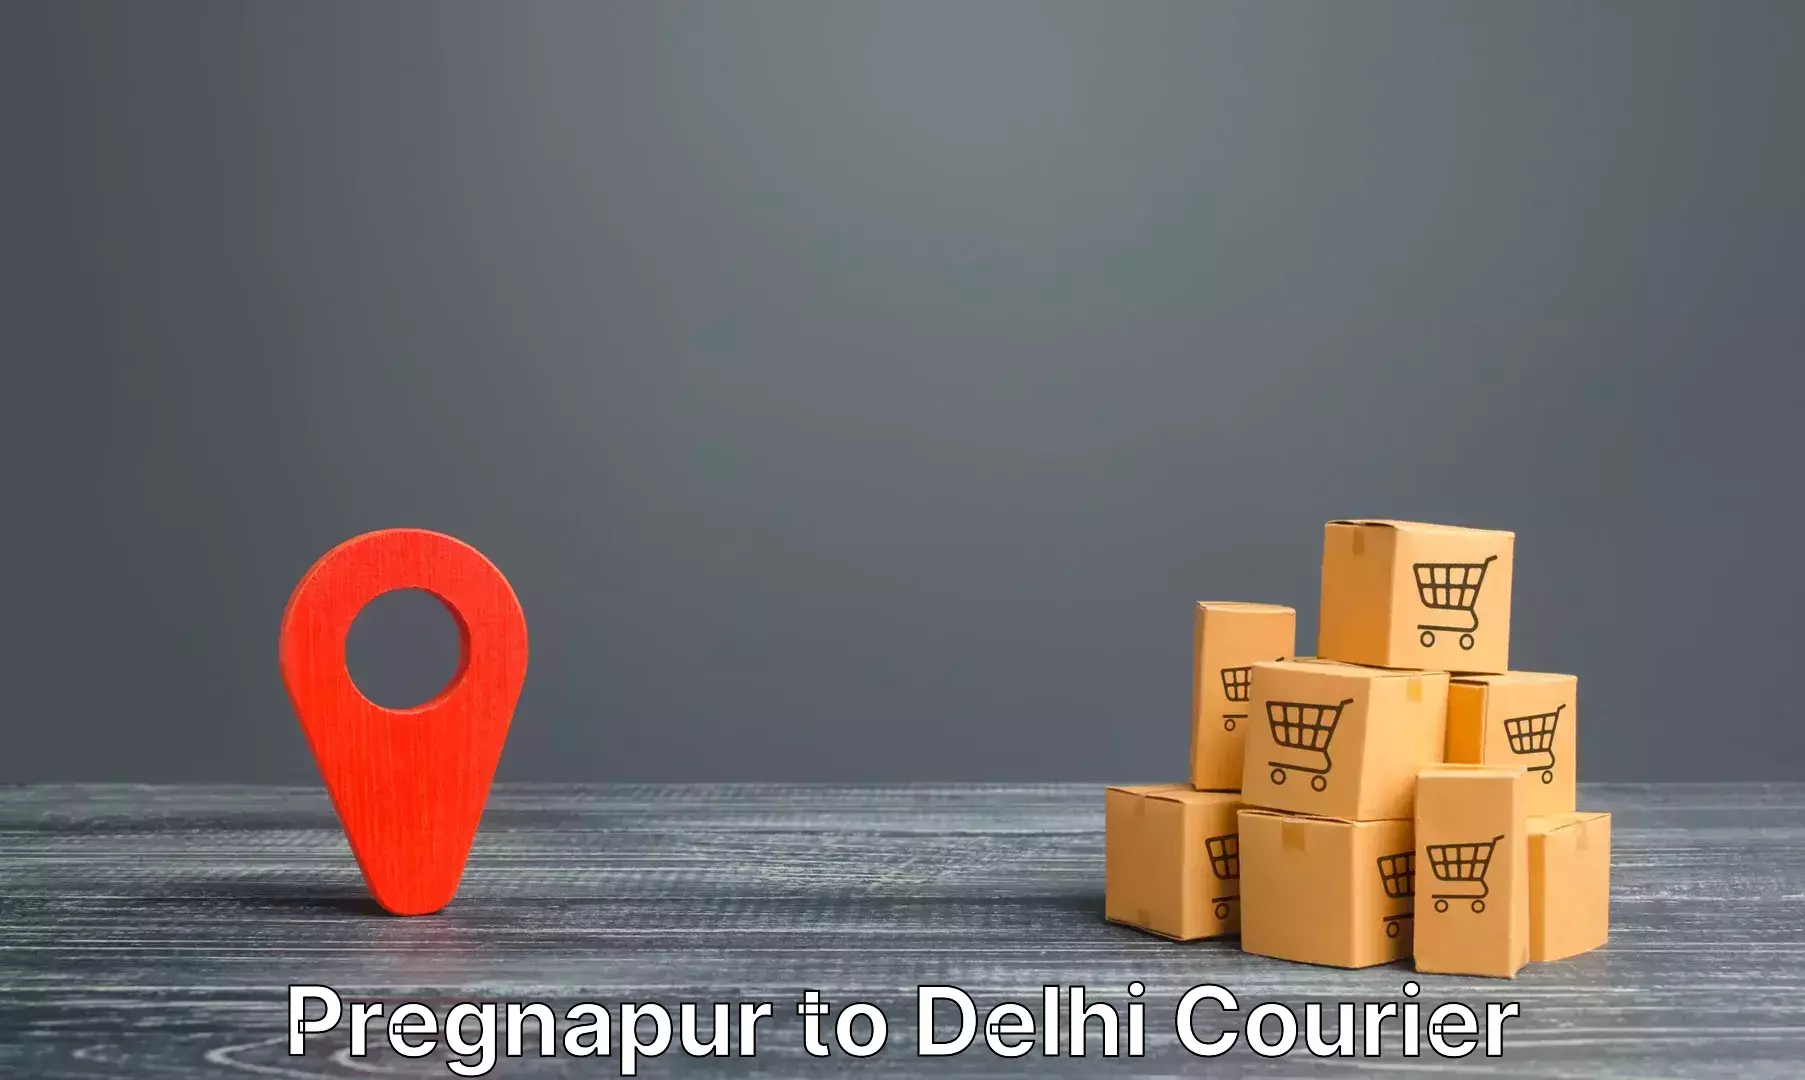 Premium luggage delivery in Pregnapur to Delhi